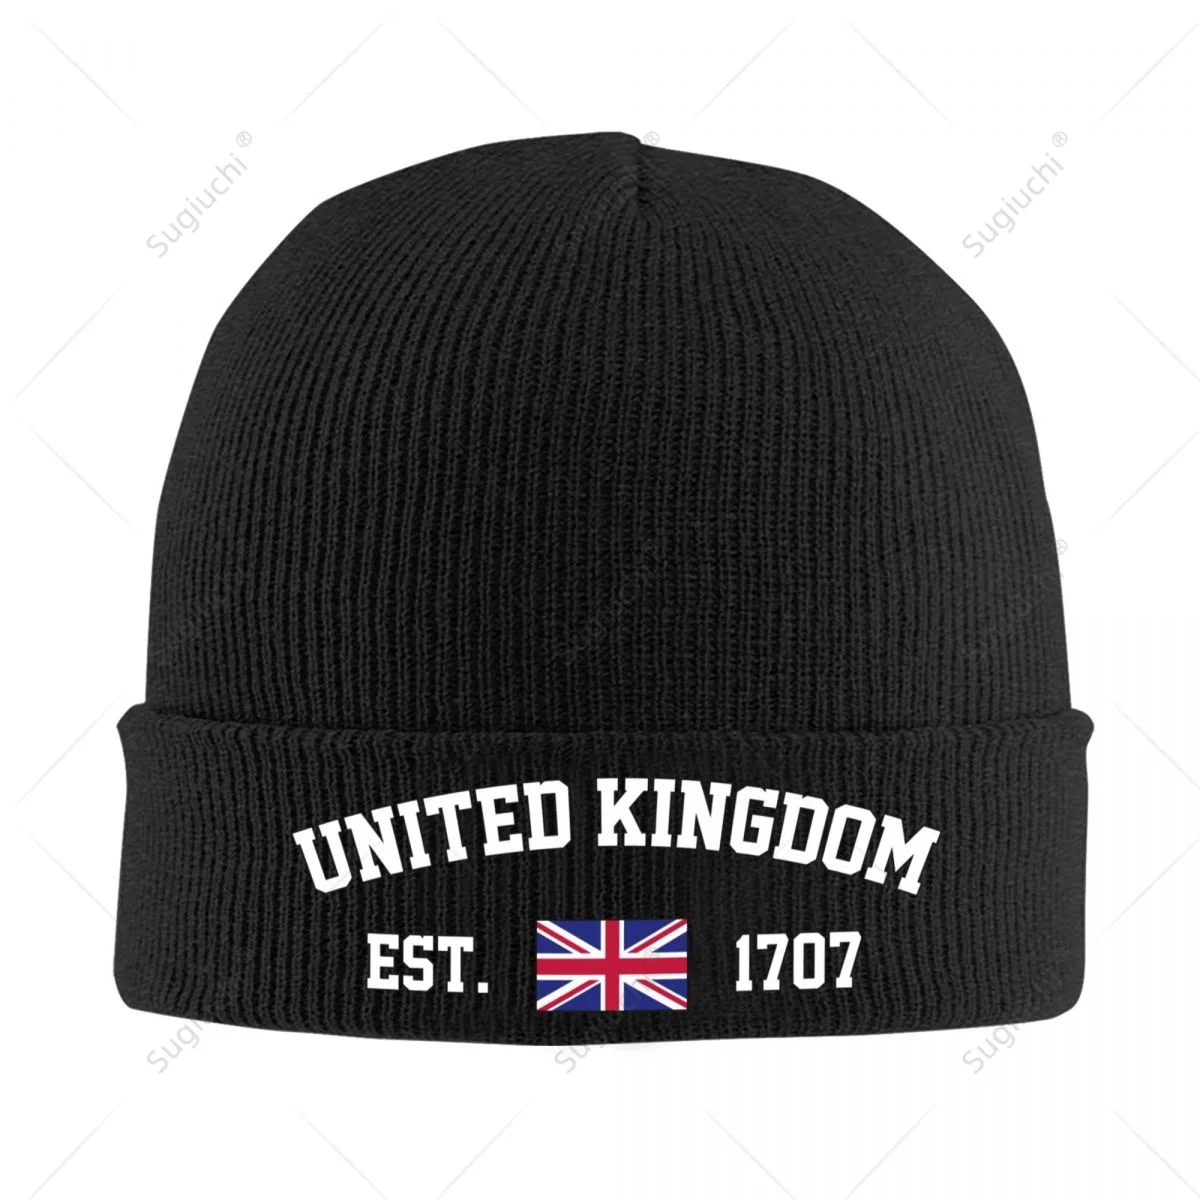 

Унисекс, Великобритания EST.1707, вязаная шапка для мужчин, женщин, мальчиков, зимняя детская шапка, теплая шапочка